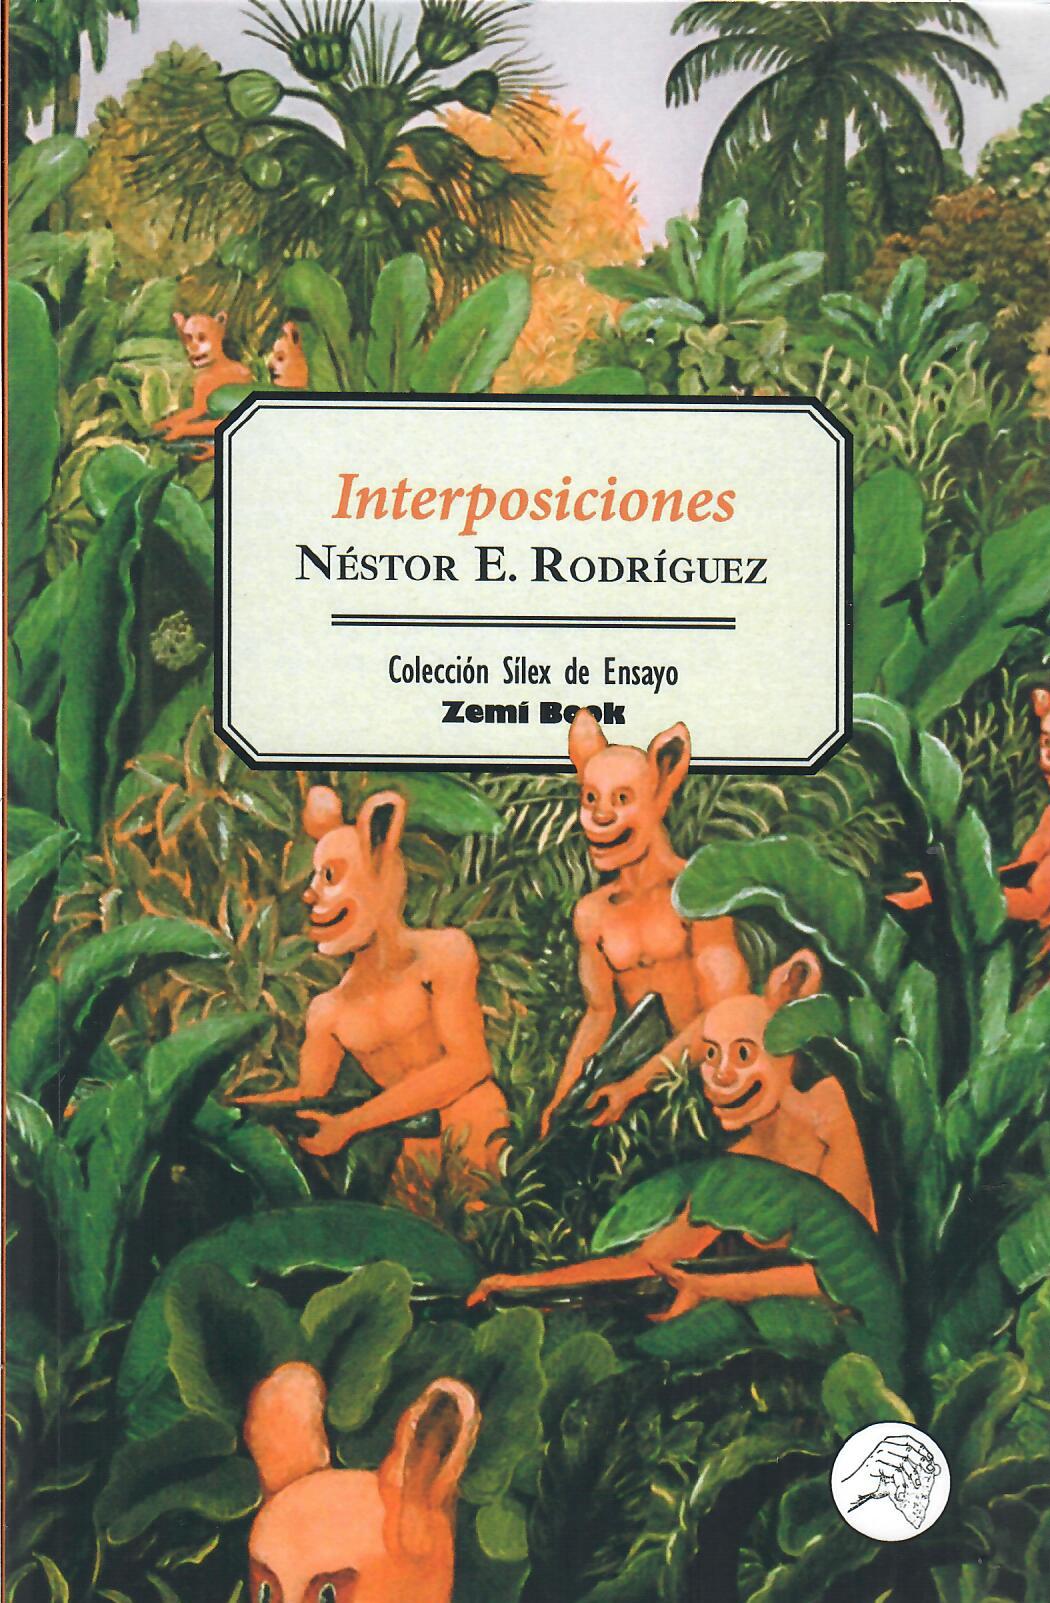 INTERPOSICIONES - Néstor E. Rodríguez